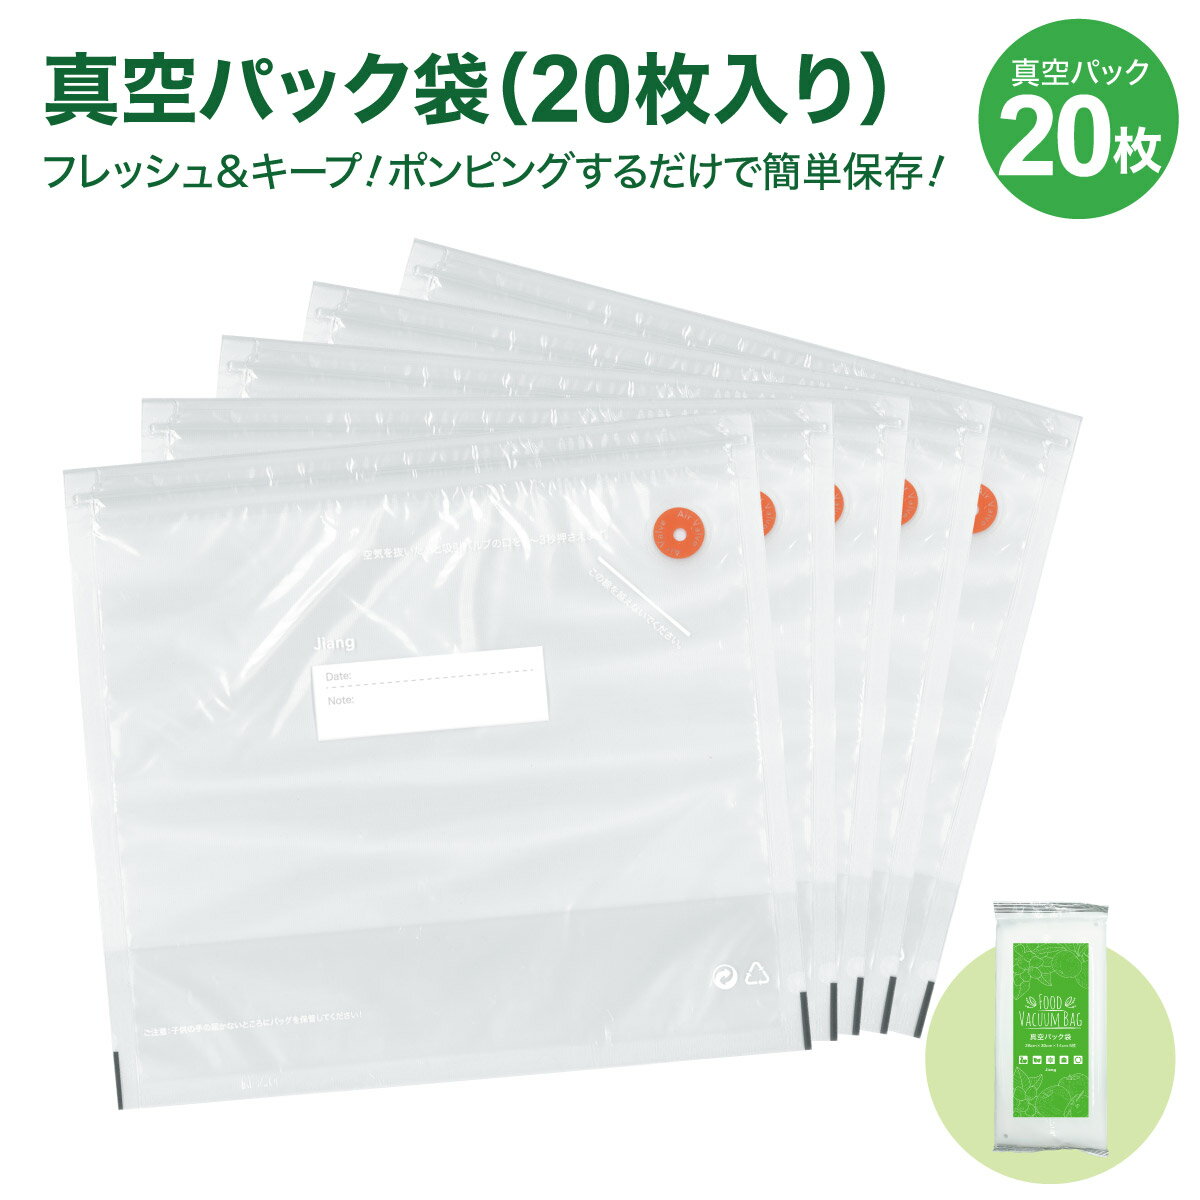 真空パック 袋 マチあり 20枚セット 27.6×29.8cm×マチアリ 食品袋 密封袋 真空保存 再利用 キッチン用品 sinku-20